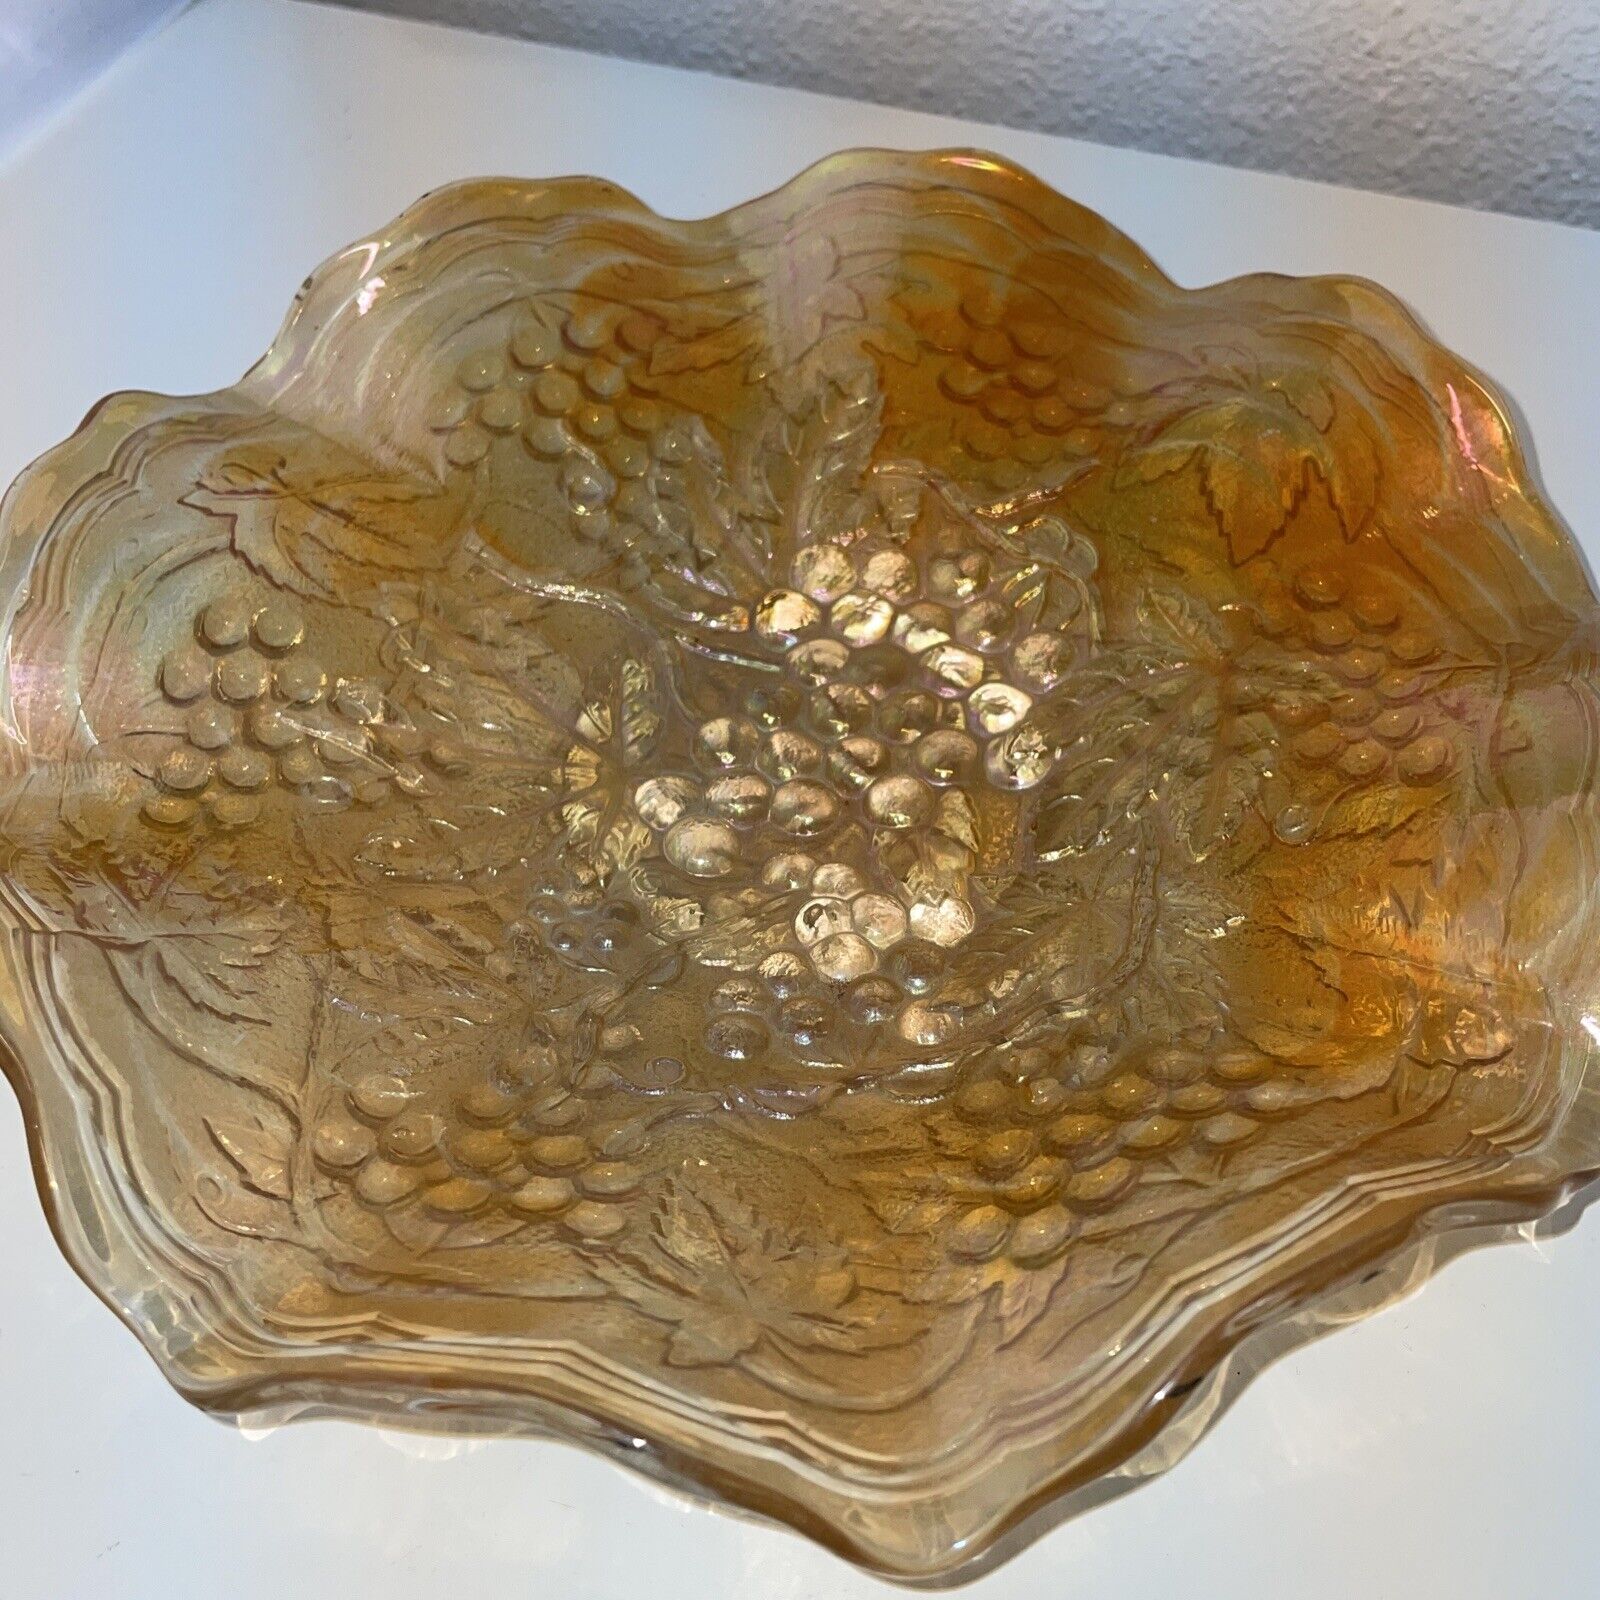 Carnival Glass decorative grapes design bowl 81/2”